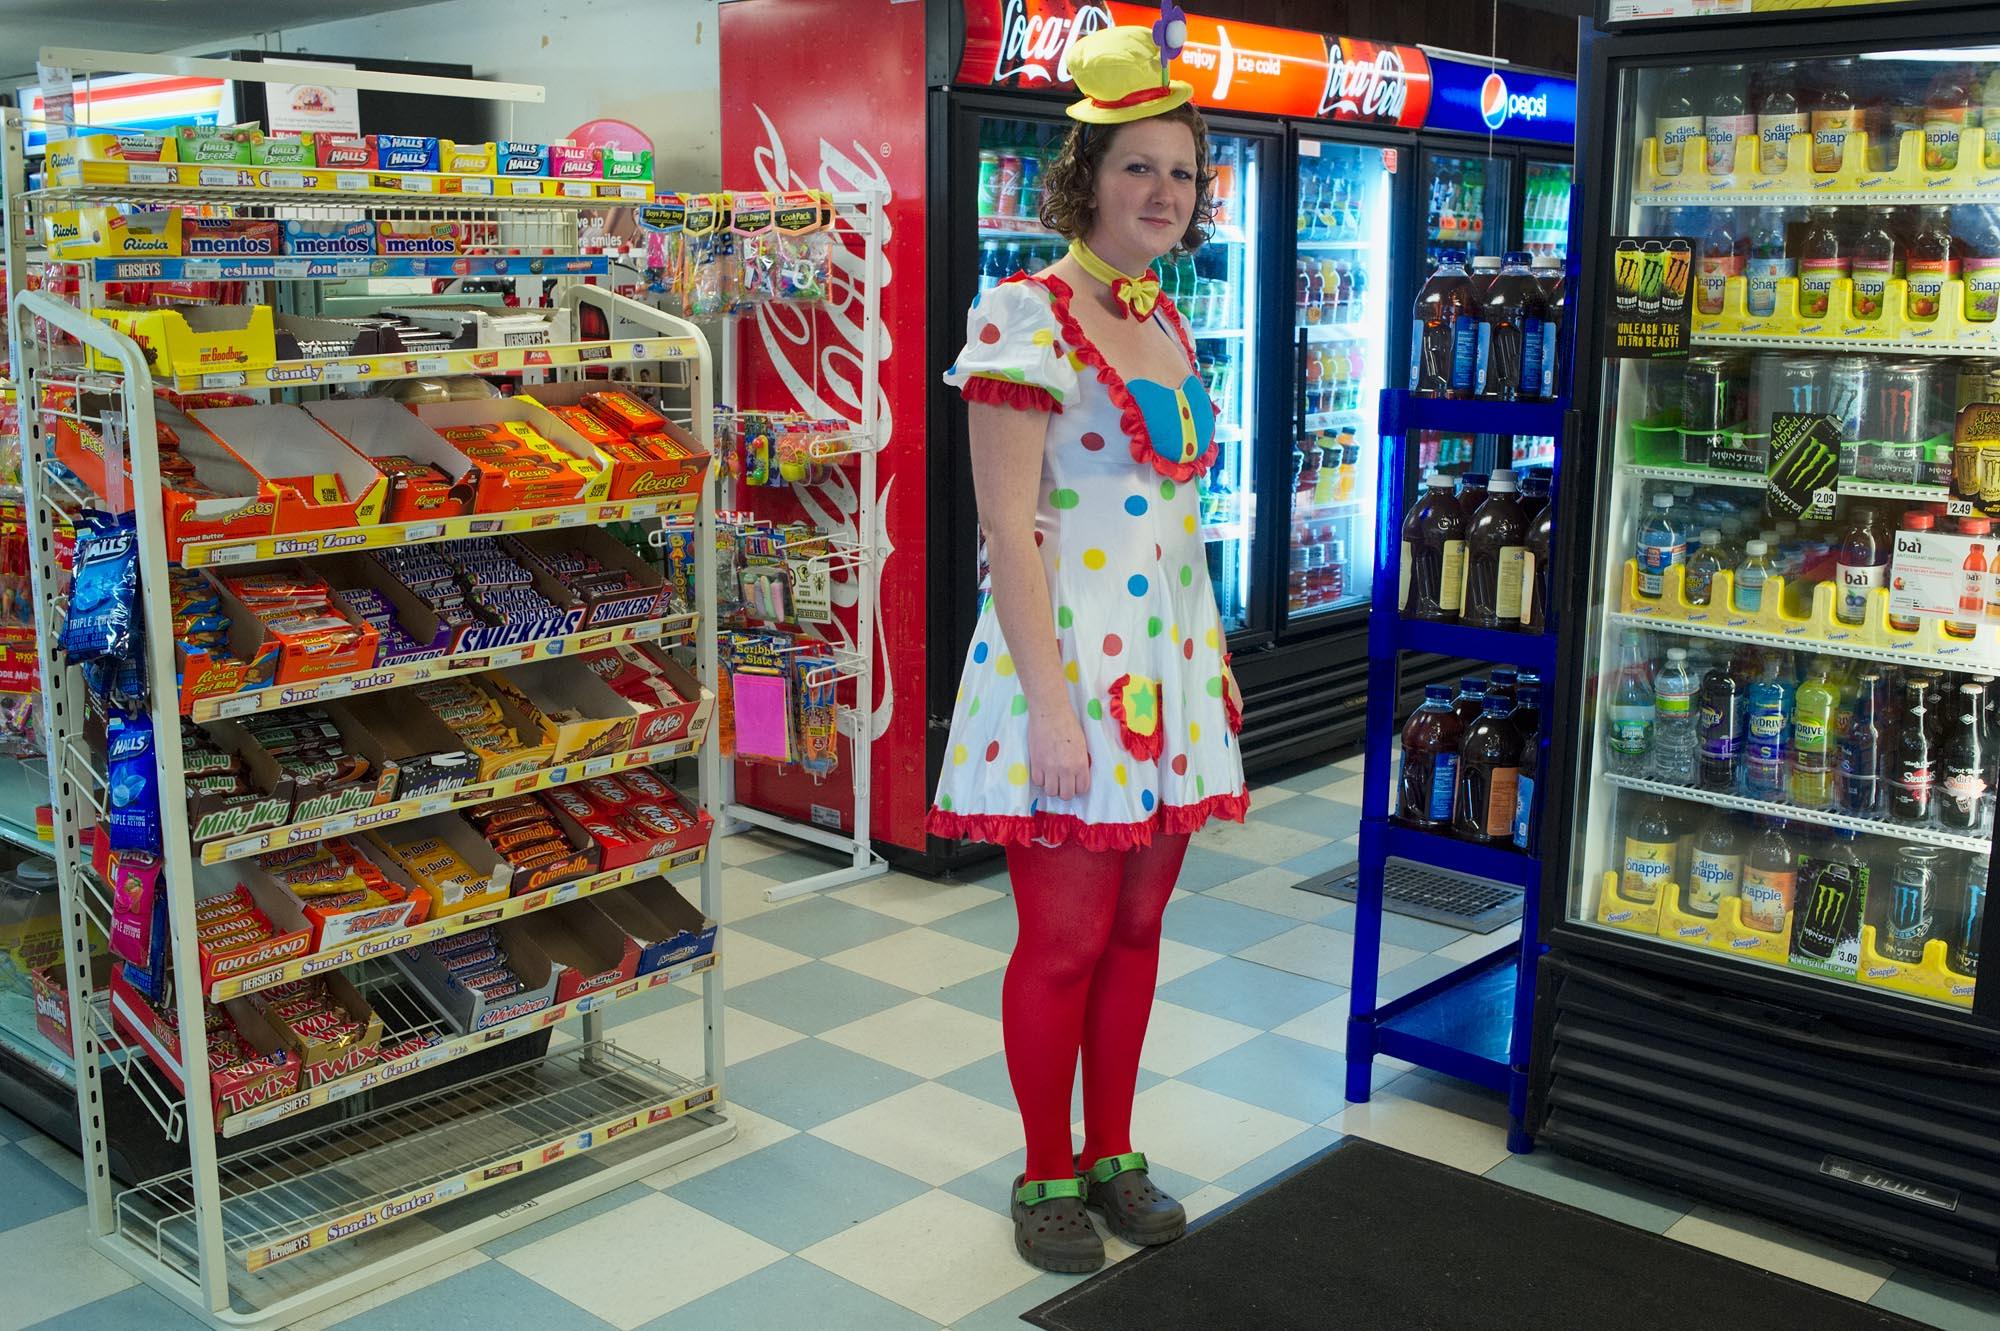 Drewsville & Beyond - Salesgirl of the Drewsville General Store in Halloween...